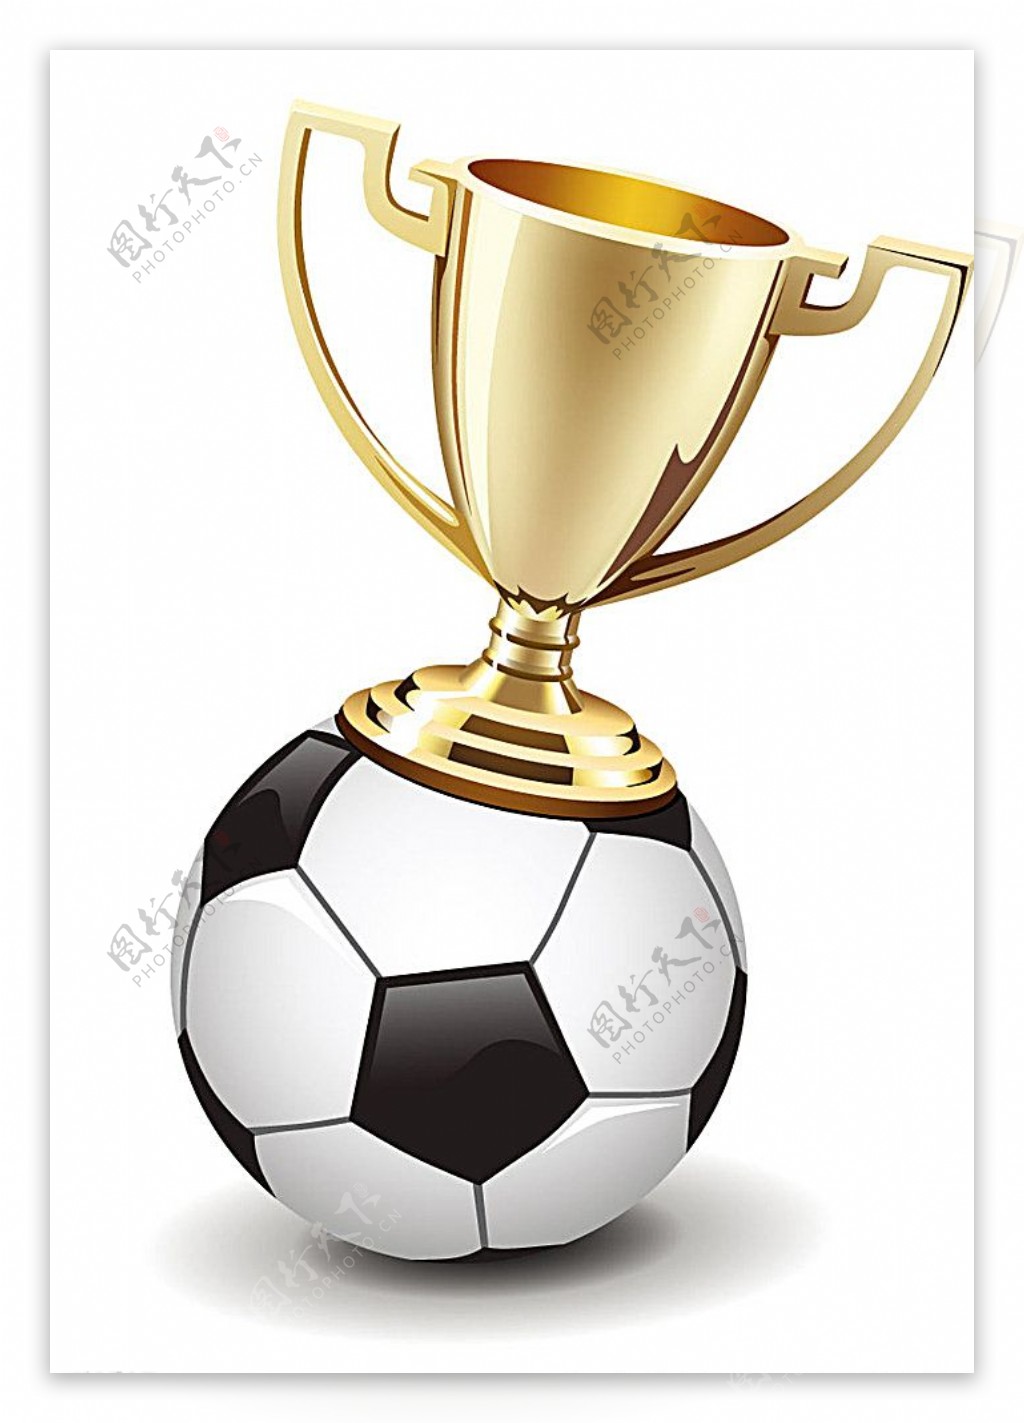 精美奖杯与足球设计矢量素材图片